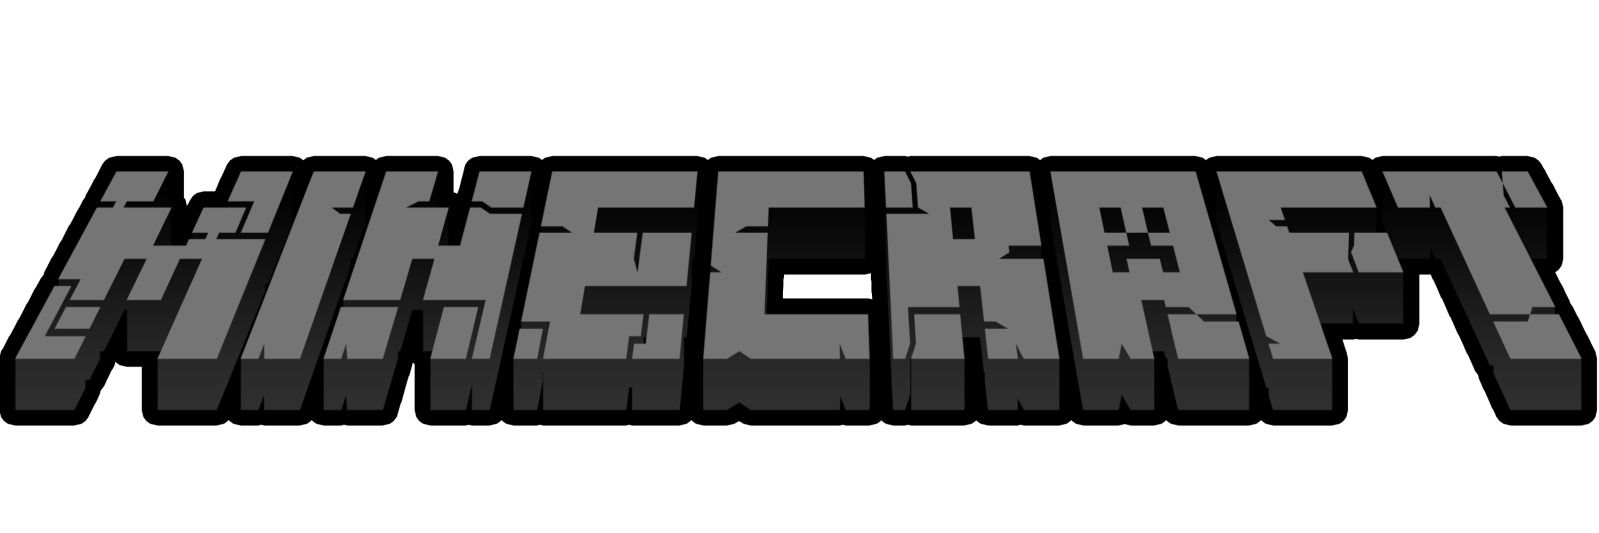 Best Games Wallpaper: Minecraft Logo, Games